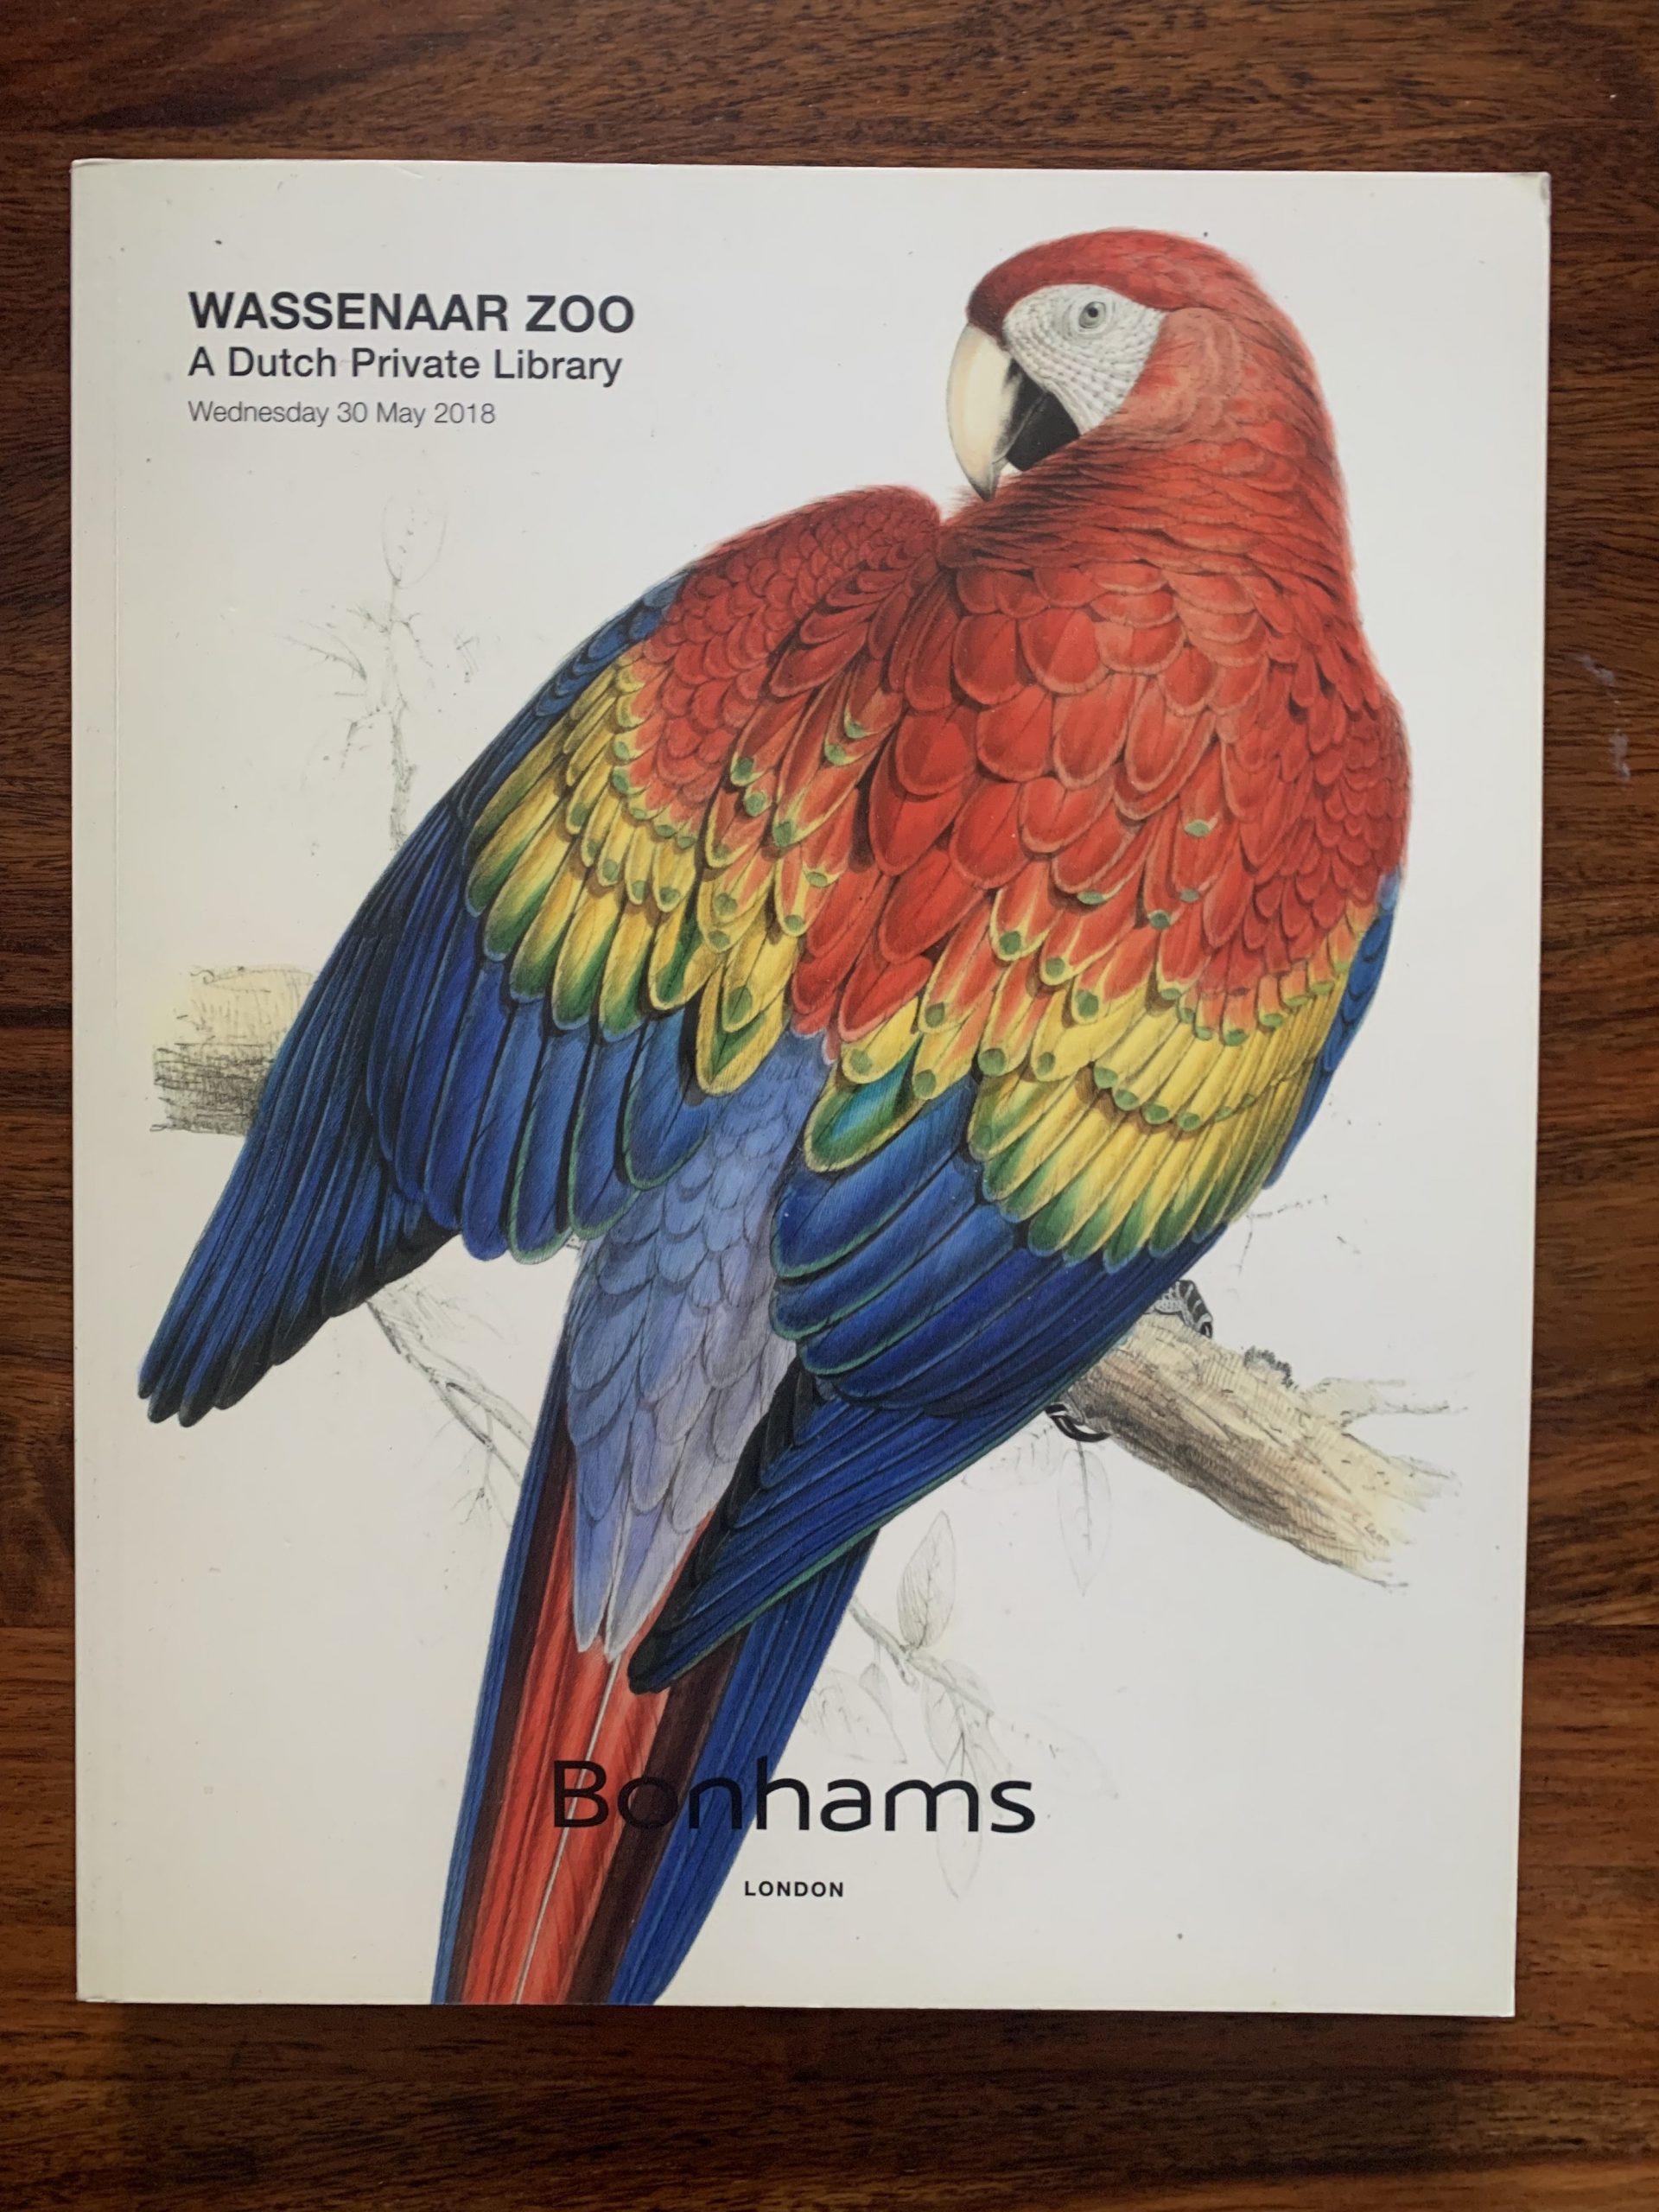 Bonhams. Wassenaar Zoo.